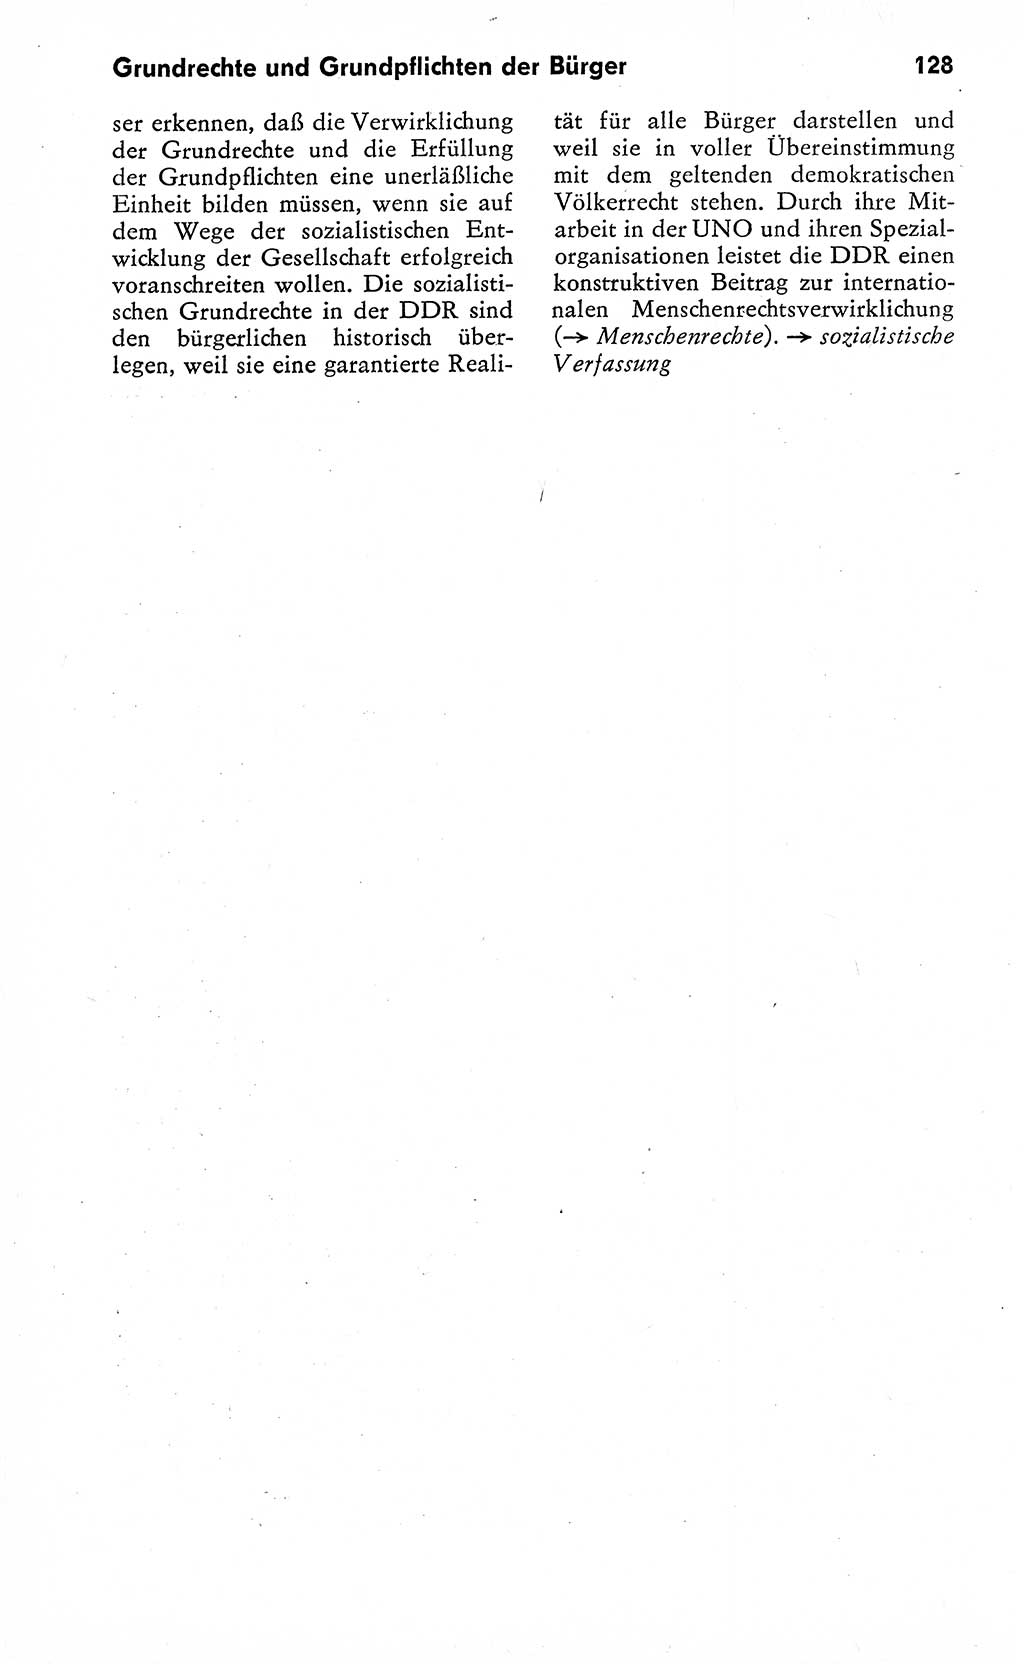 Wörterbuch zum sozialistischen Staat [Deutsche Demokratische Republik (DDR)] 1974, Seite 128 (Wb. soz. St. DDR 1974, S. 128)